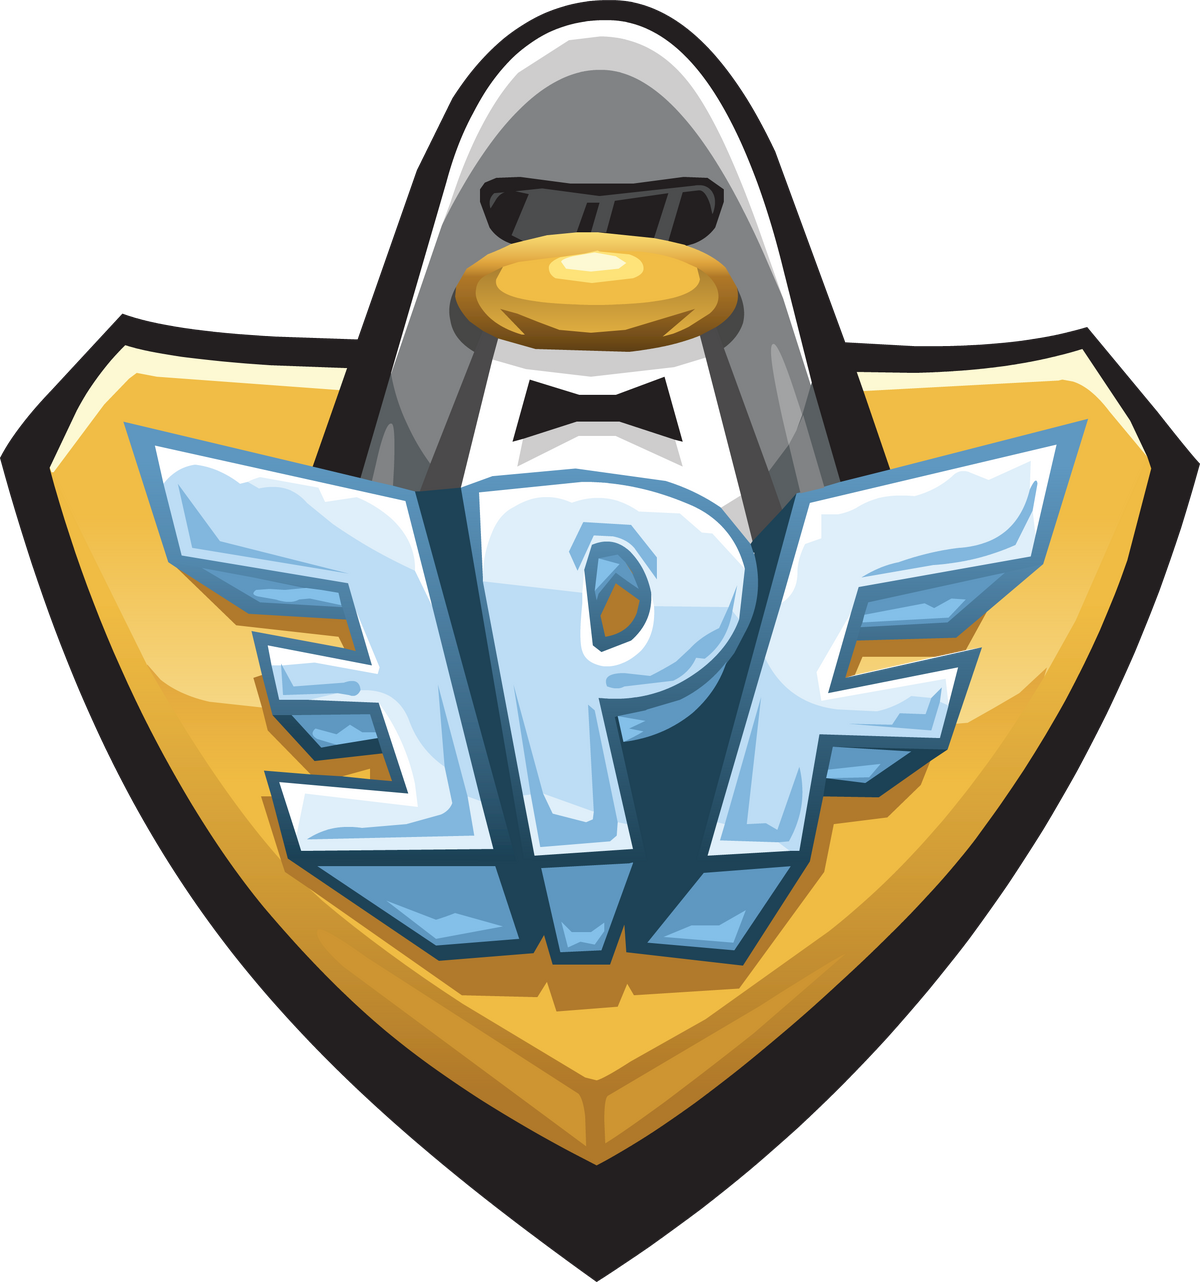 Become a EPF Agent on Club Penguin.com